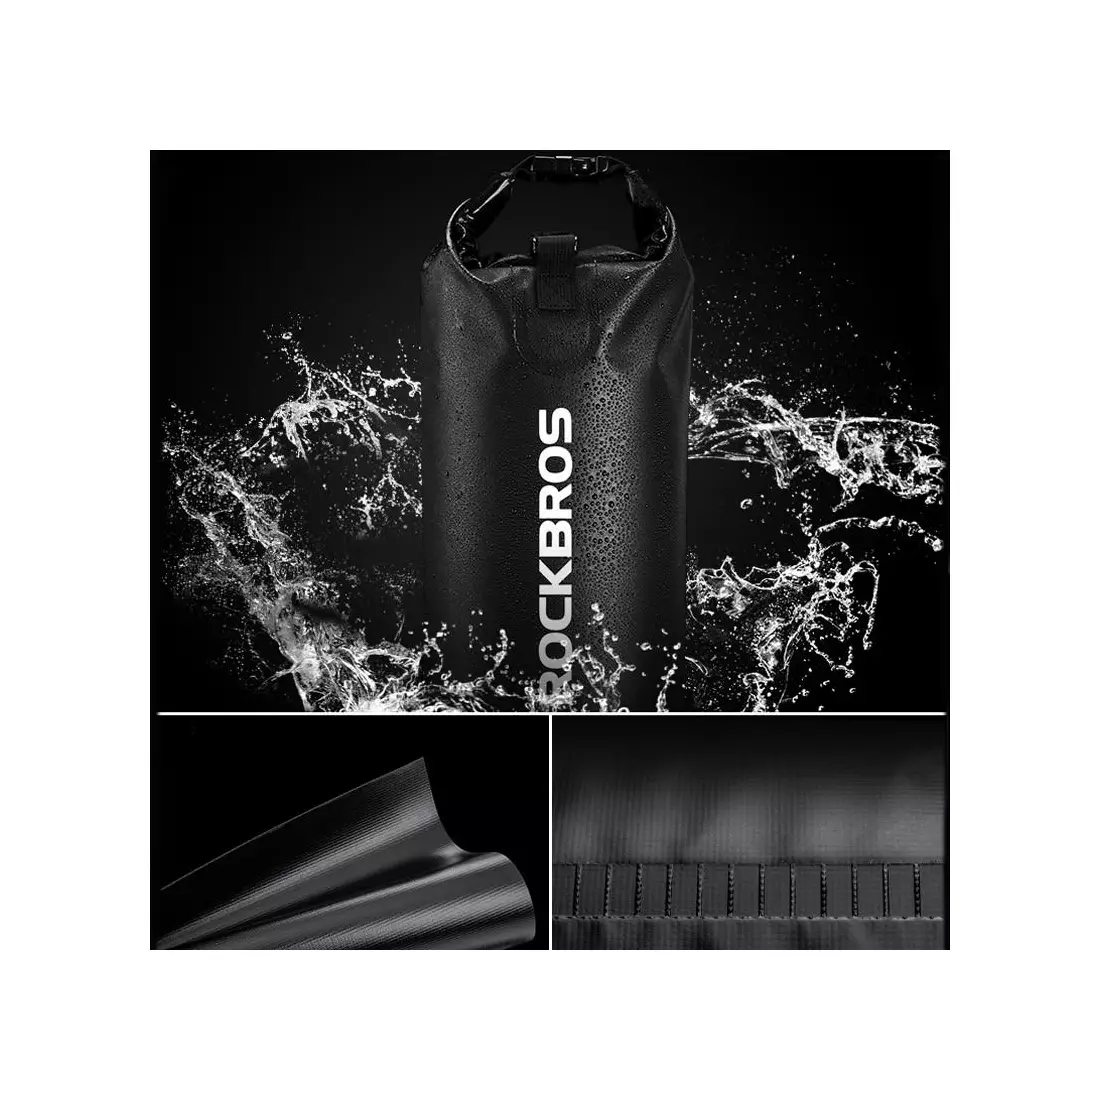 Rockbros vízálló hátizsák / táska 10l ST-004BK fekete